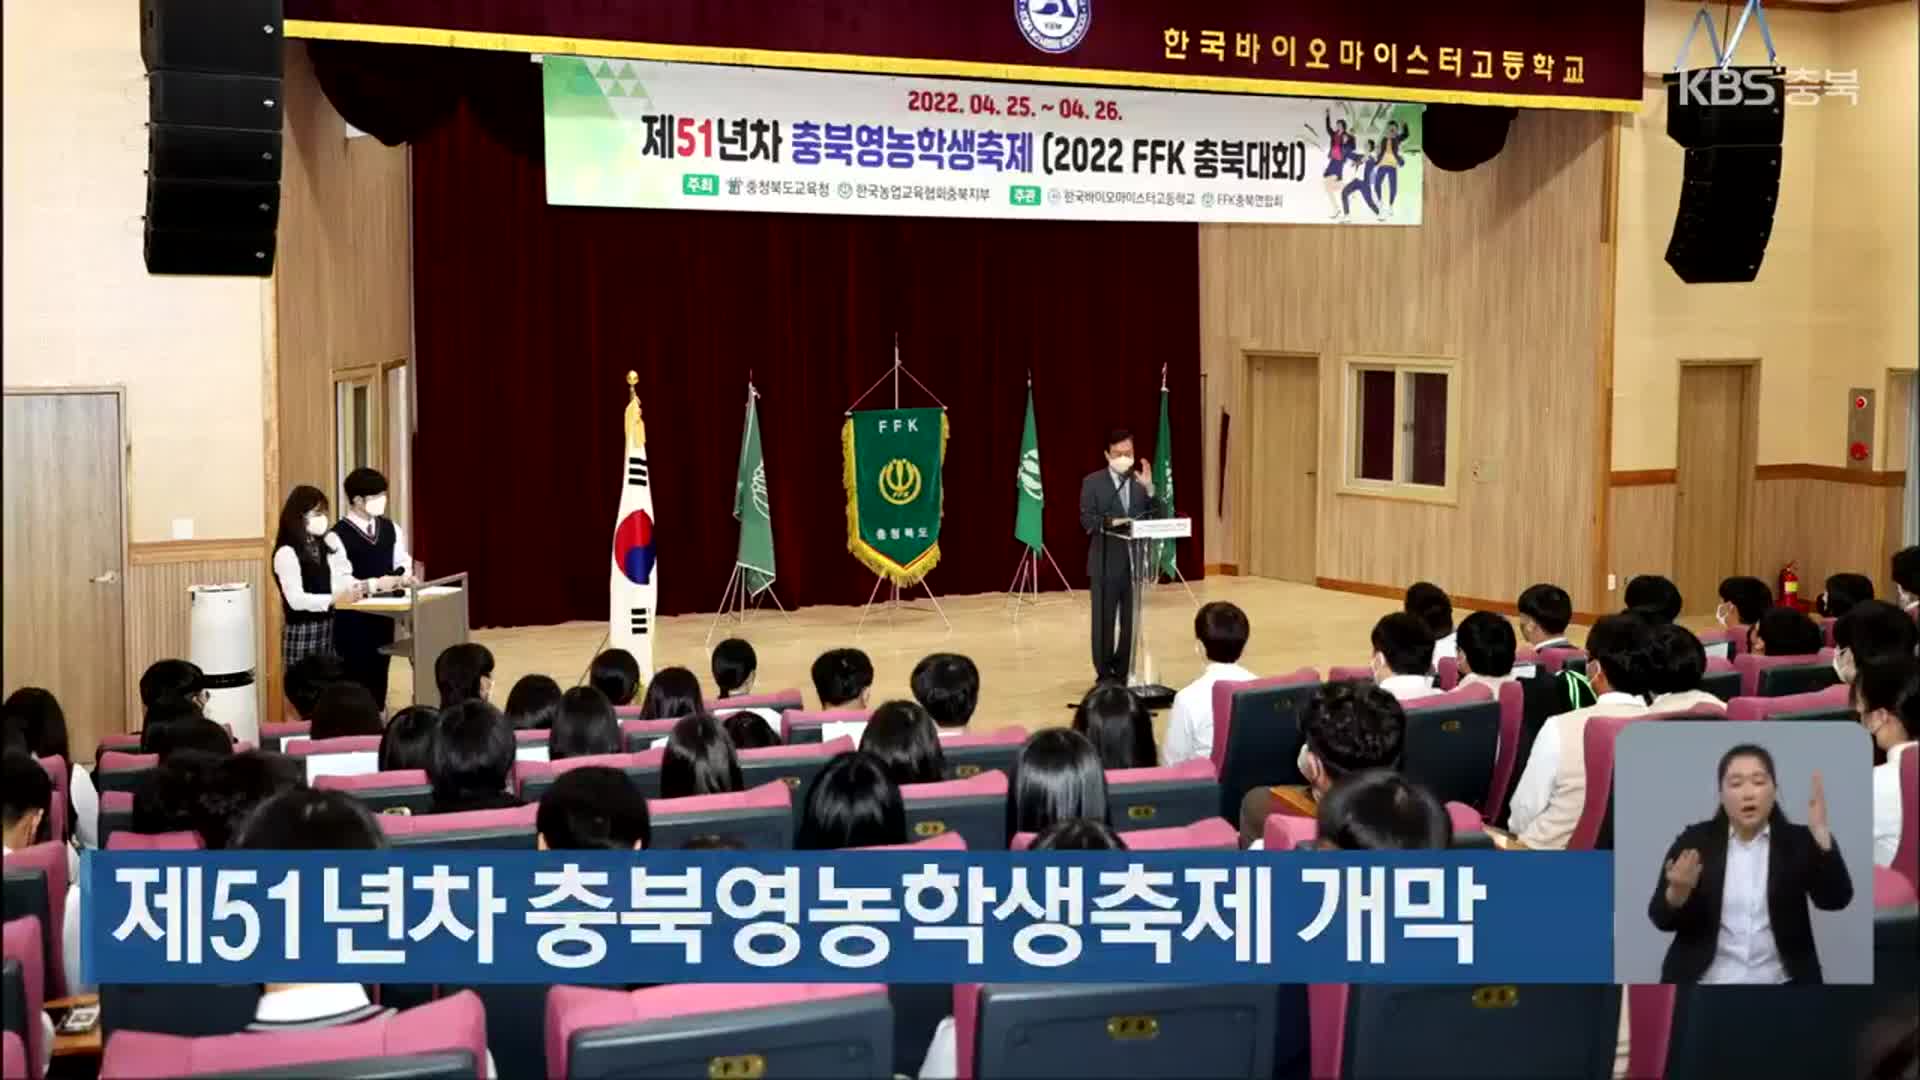 제51년차 충북영농학생축제 개막